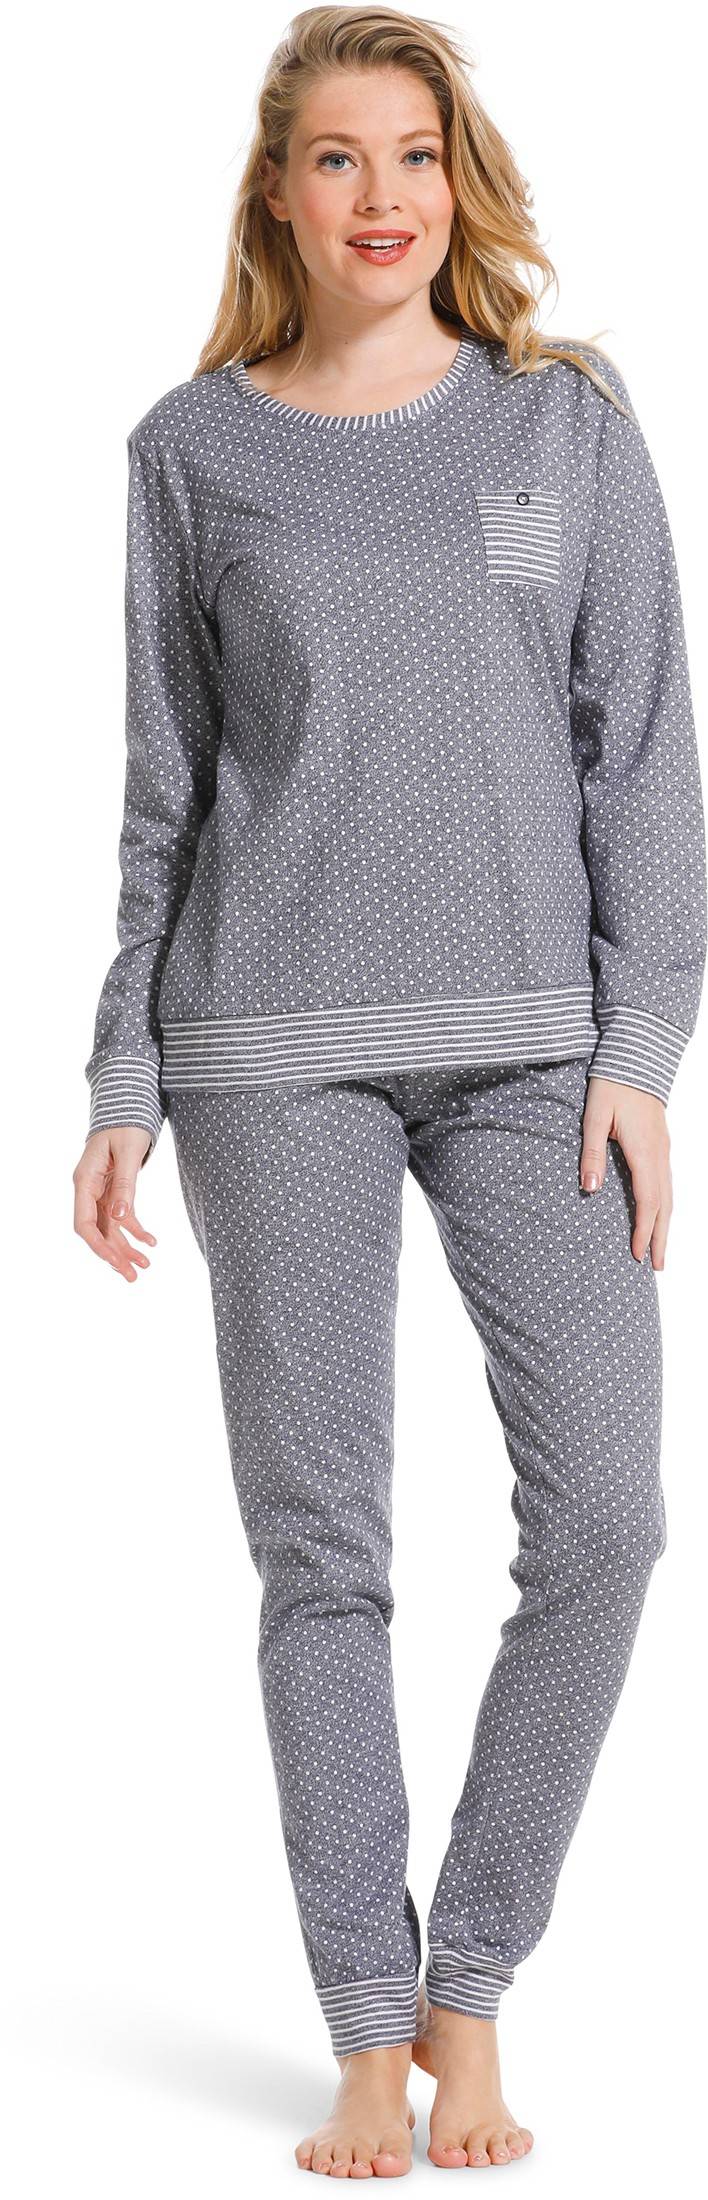 Pyjama gris pois coton manches longues Pastunette 20199-115-3